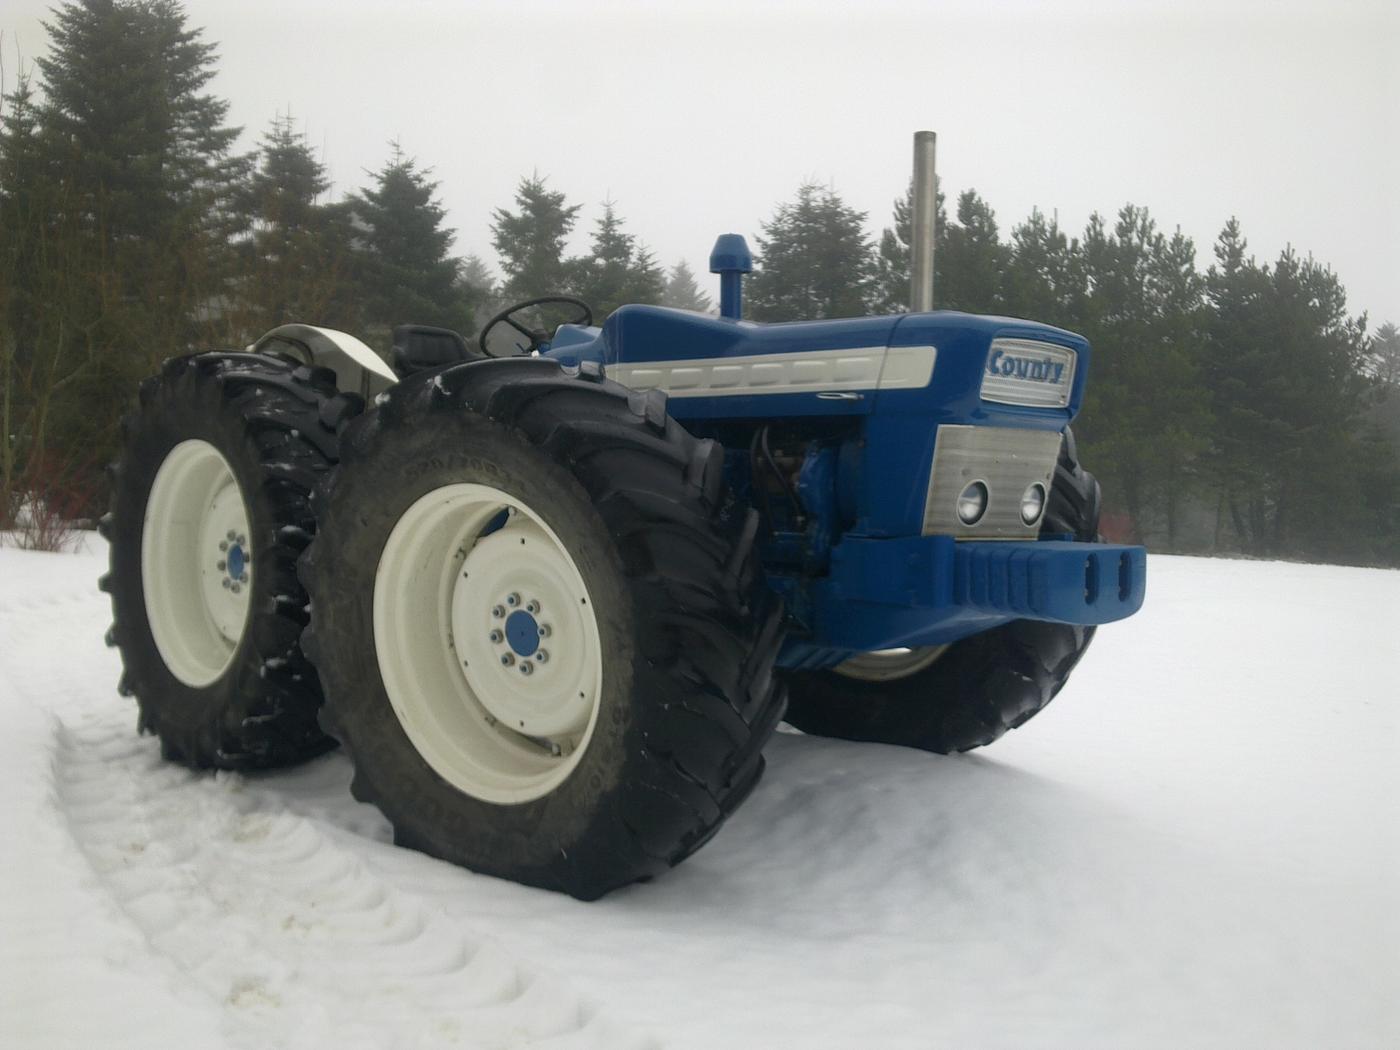 Ford county 954 super six - Billeder af traktorer - Uploaded af Ulrik ...